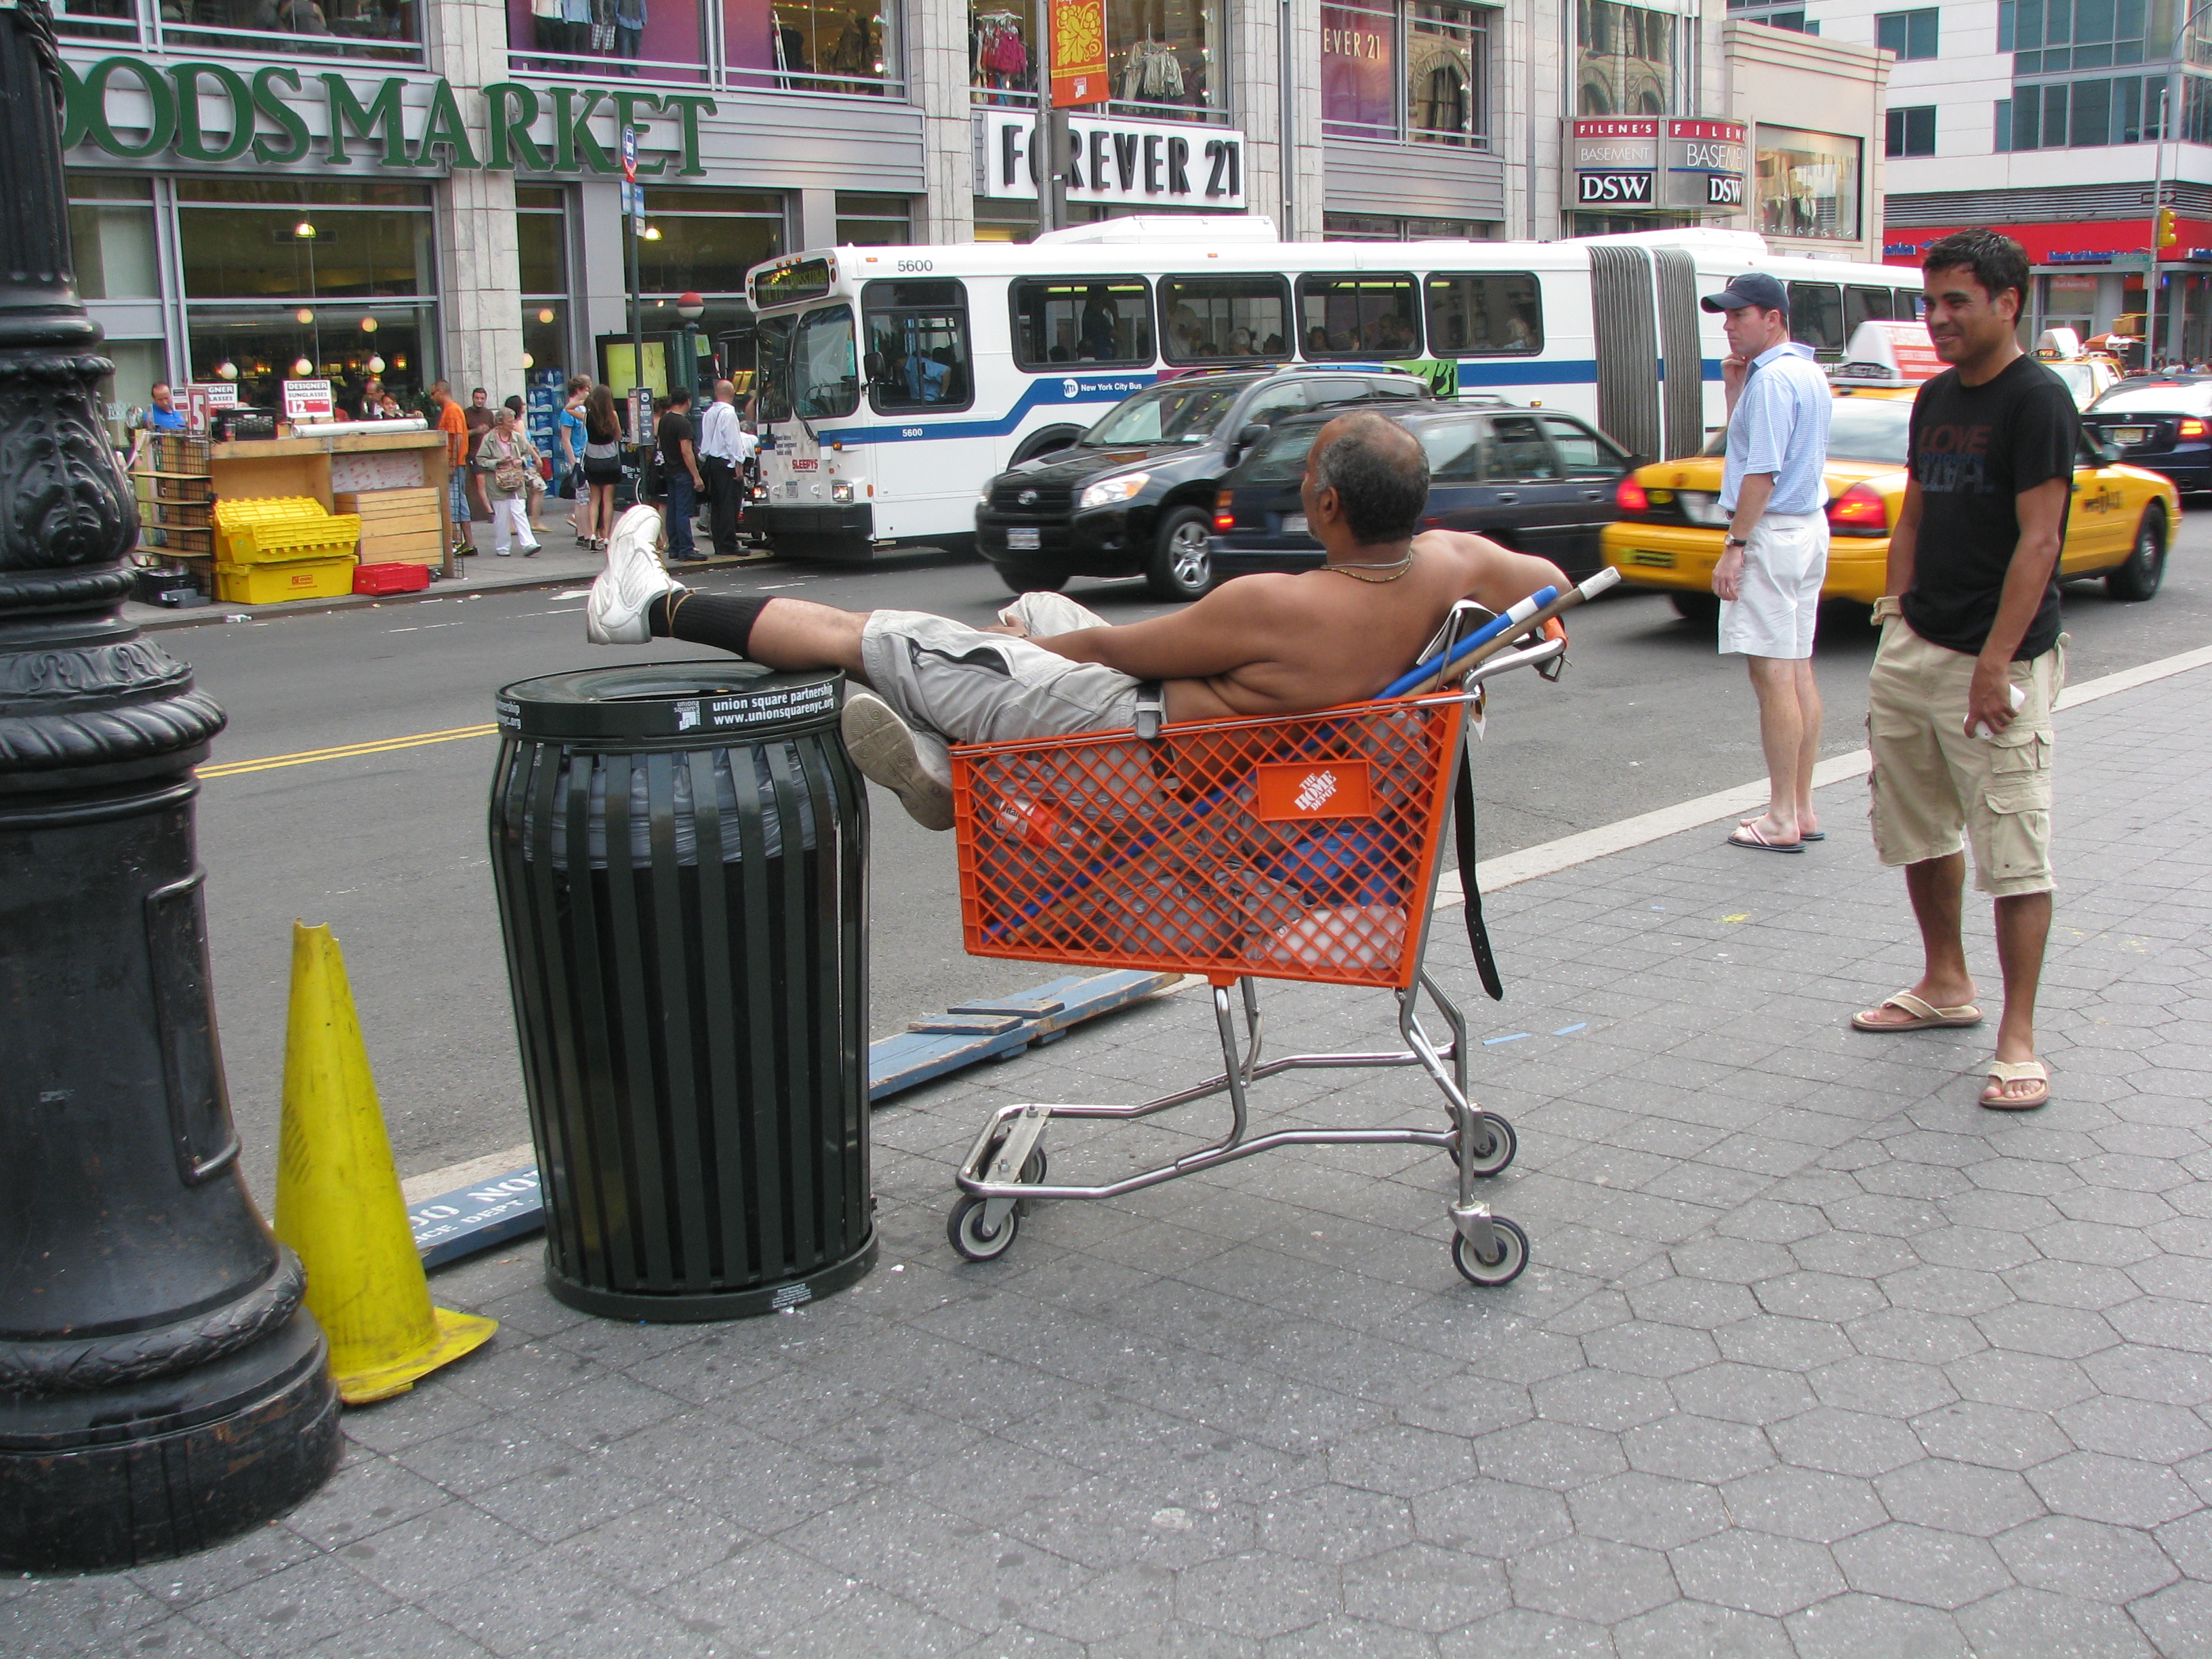 Man lounging in Shopping Cart Aug 24, 2009